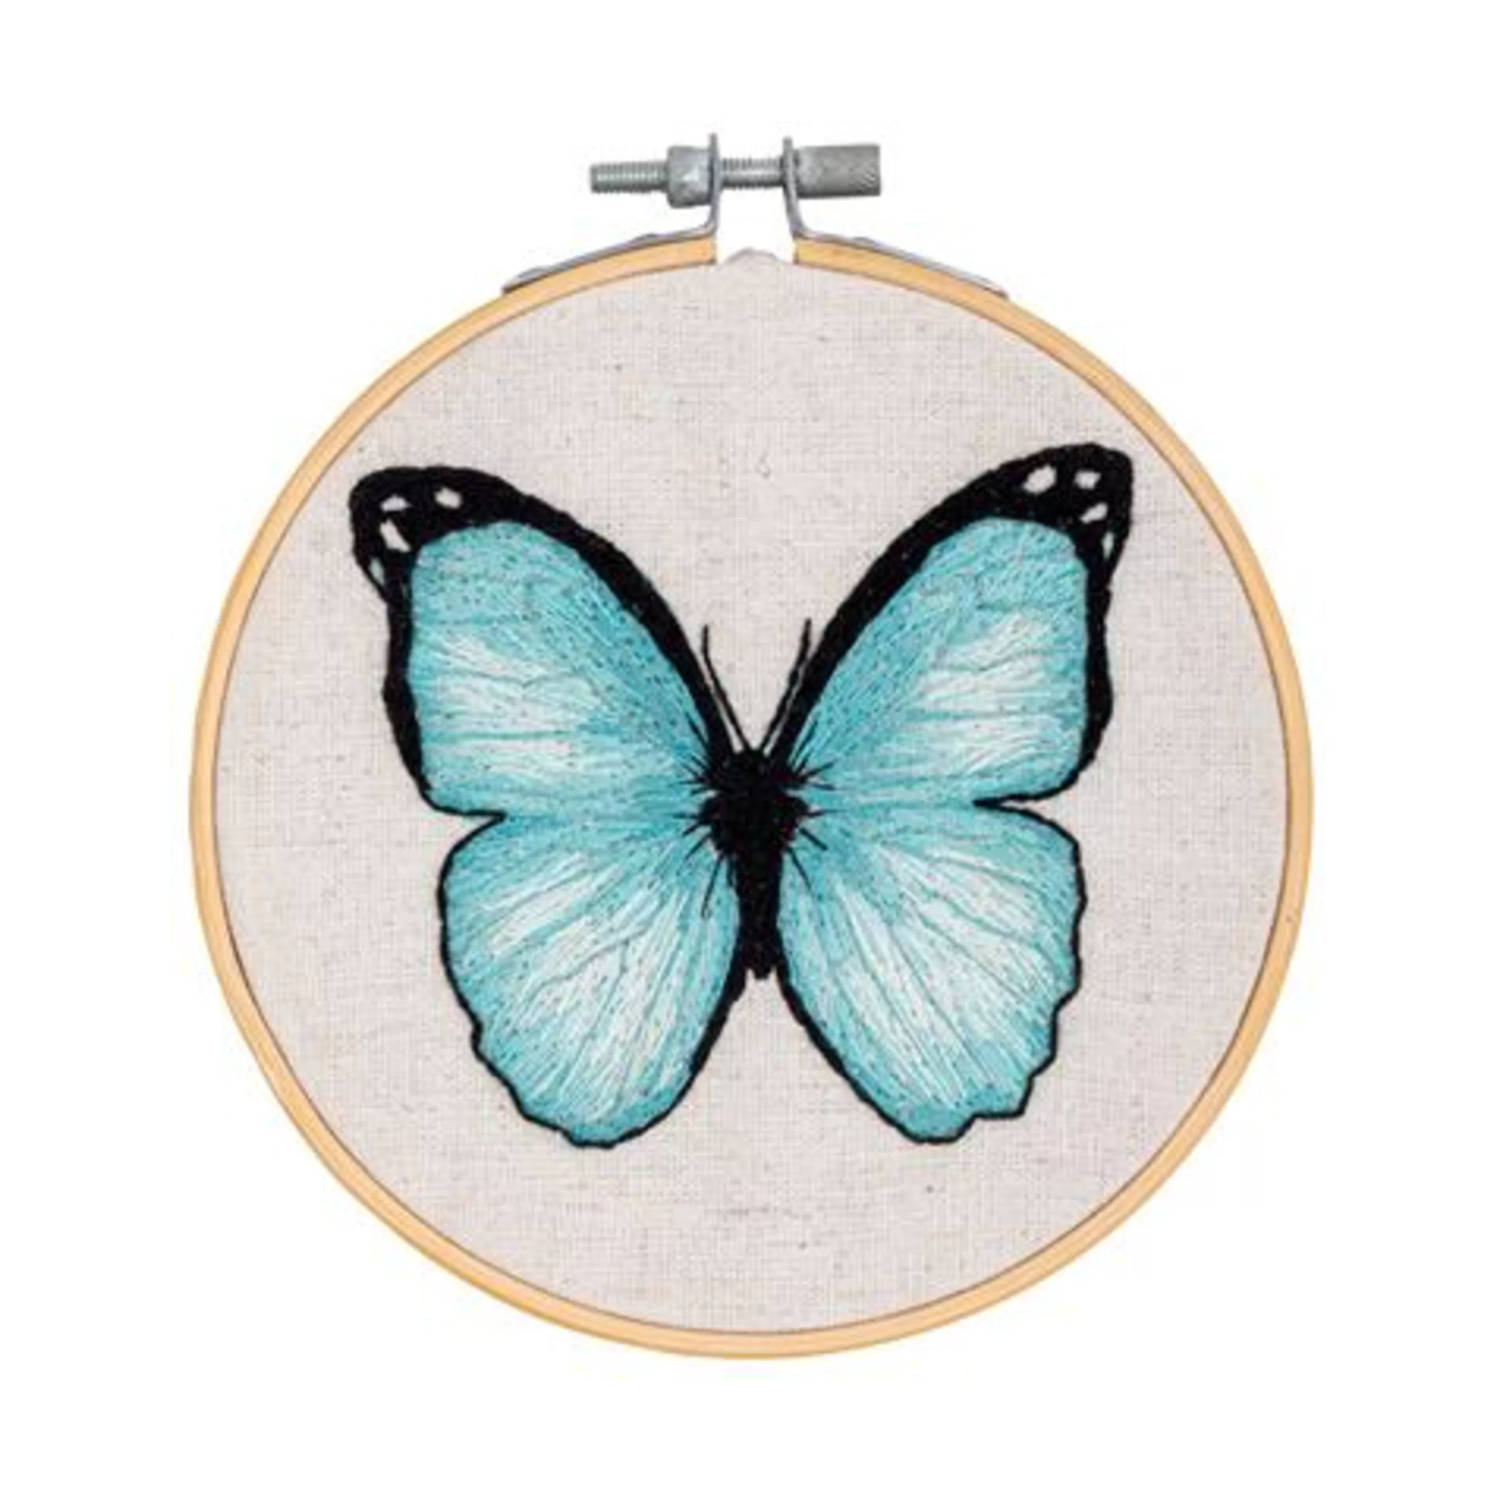 Vervaco Daffy's DIY Blauwe vlinder vrij borduren pakket PN-0198146